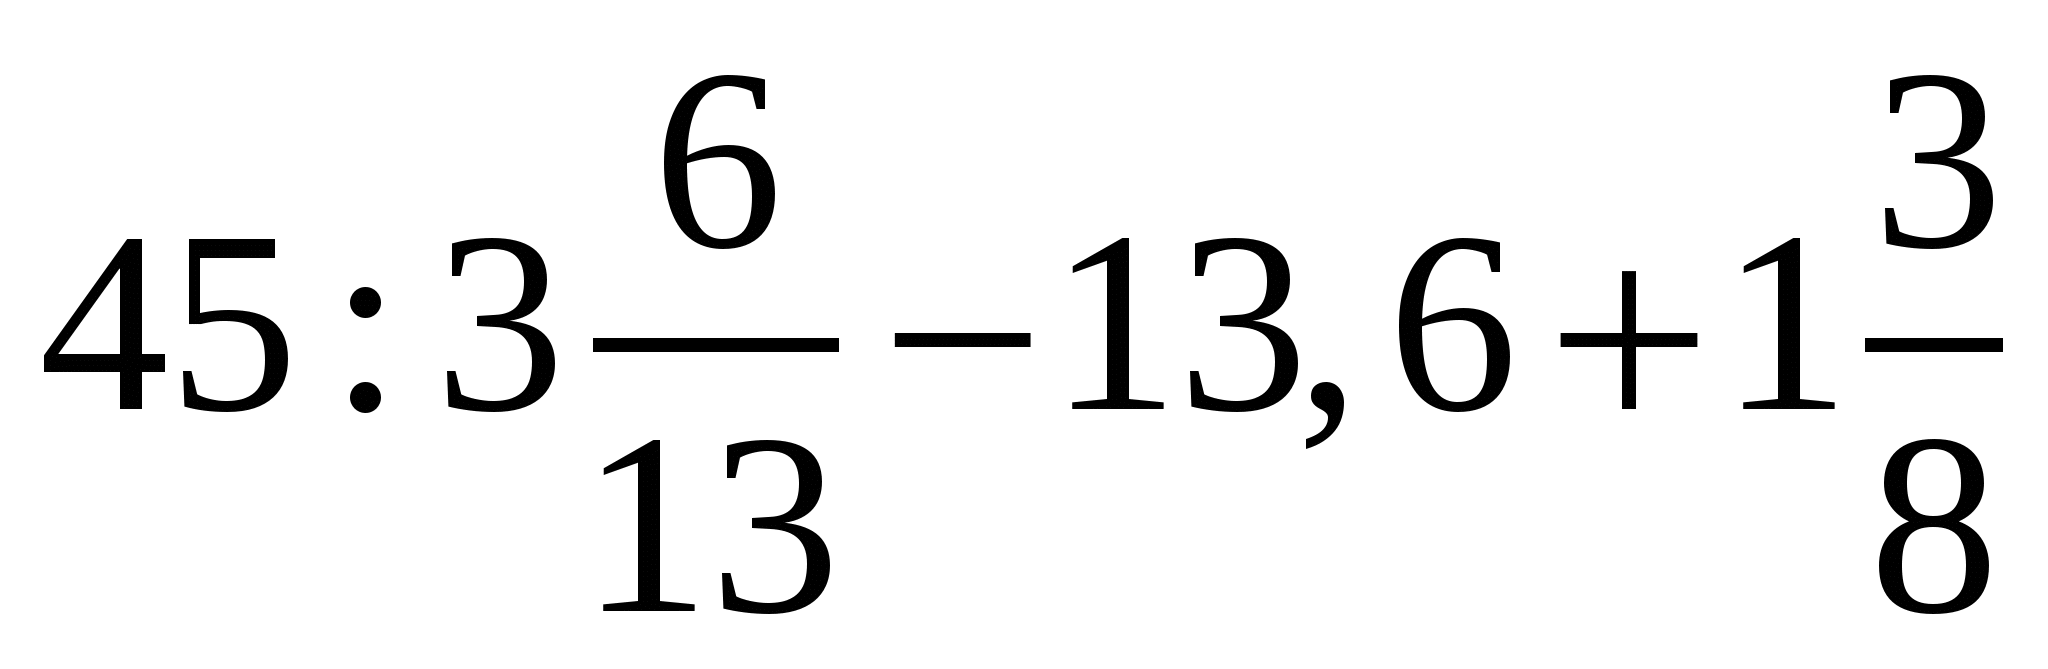 2,6х-0,75=0,9х-35,6. 45 3 6/13-13.6+1 3/8 Решение. Уравнение 2.6х-0.75 0.9х-35.6. 2,6х-0, 75=0, 9х-35, 6 ответ. 1.6 3.3